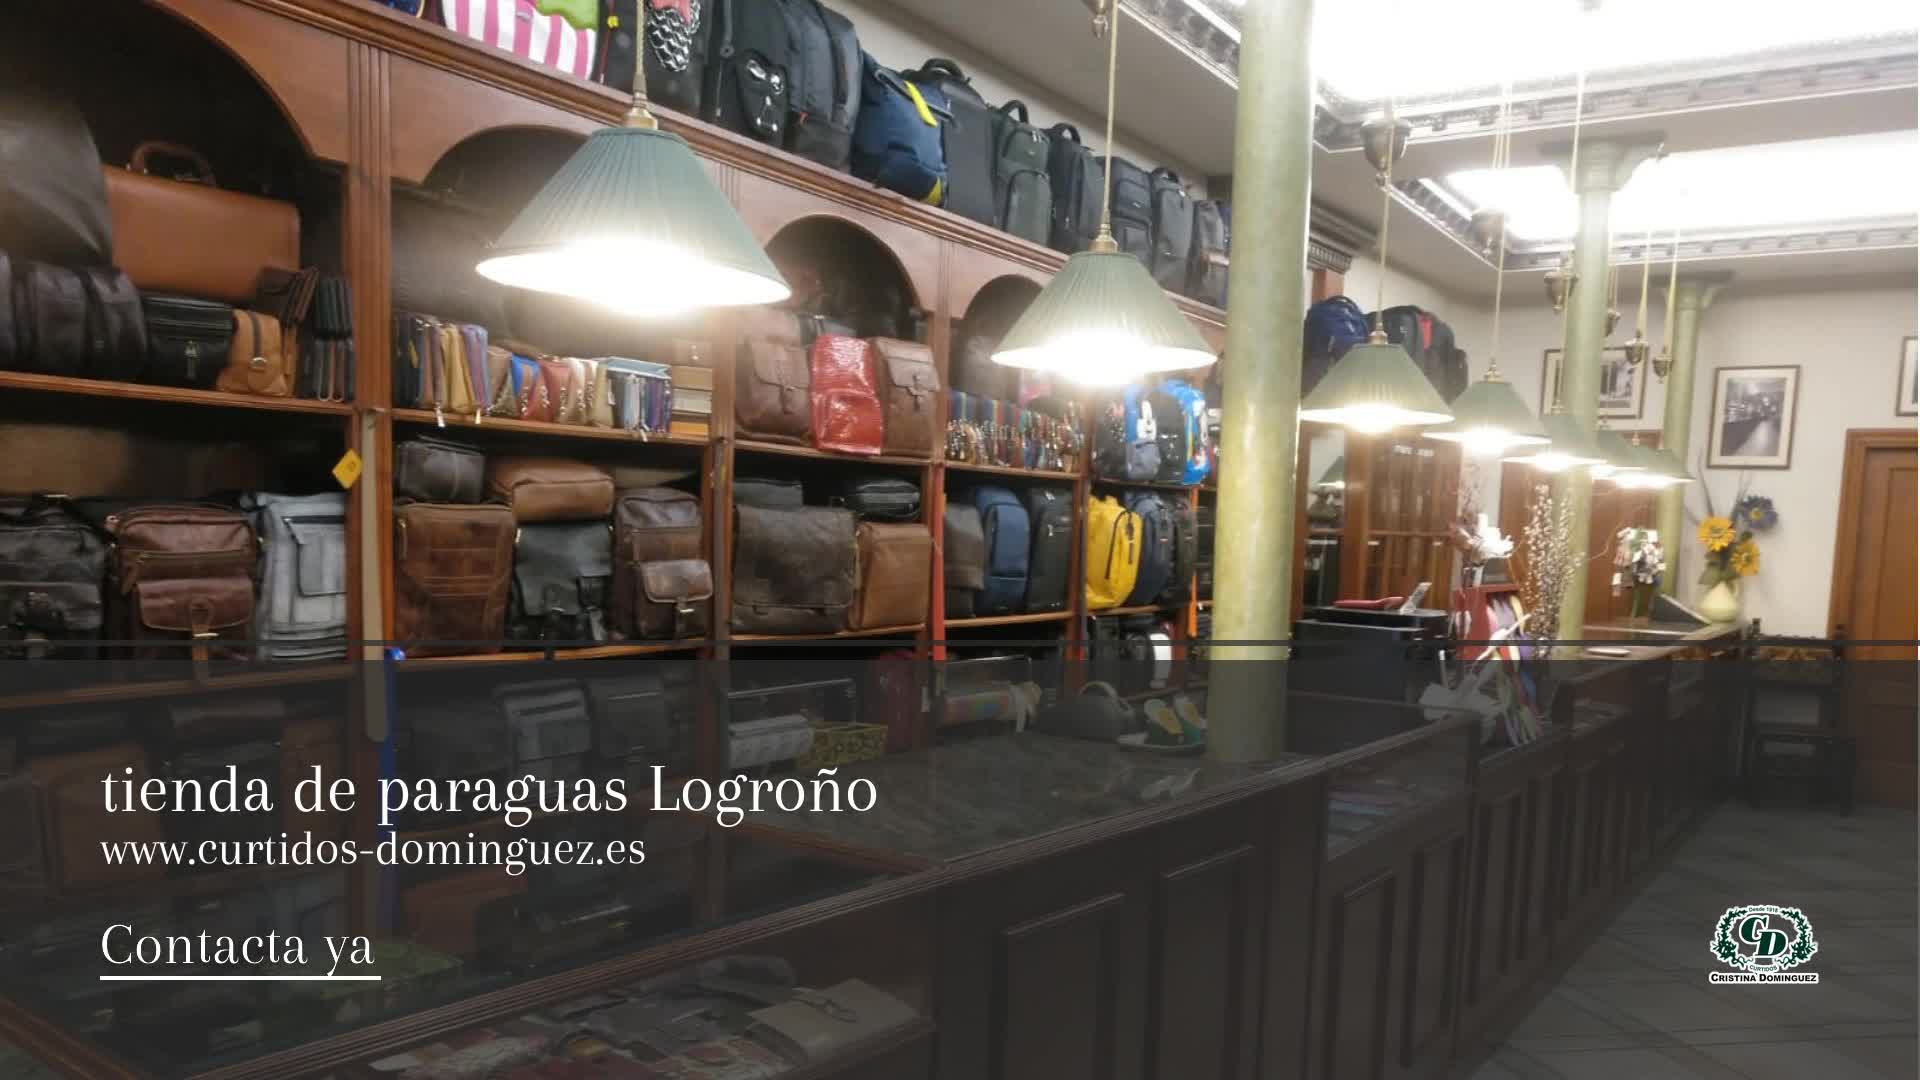 Tienda de paraguas en Logroño: Curtidos Domínguez